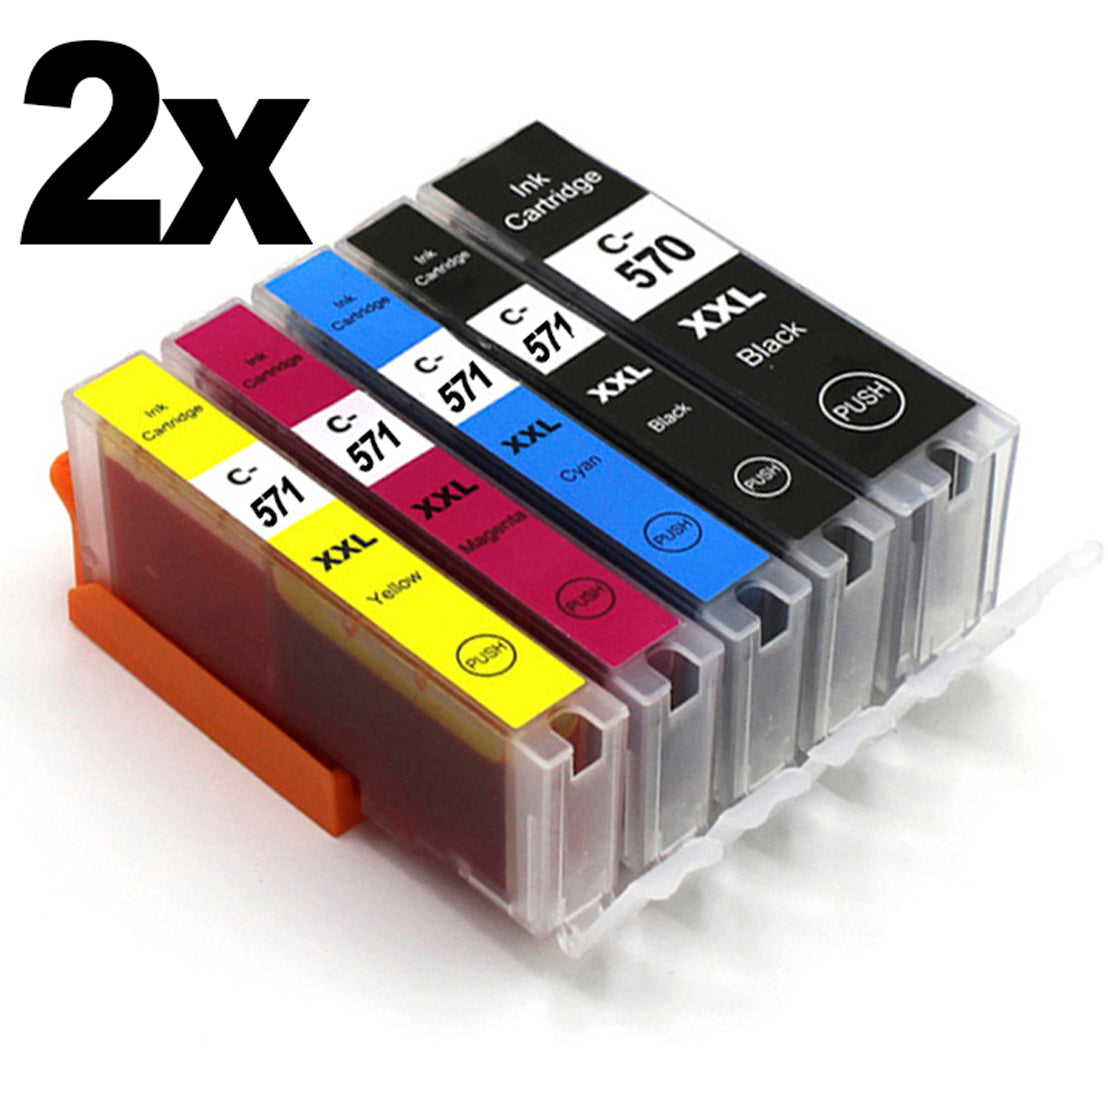 10 Druckeratronen bestehend aus 2 kompletten Setst für deinen Canon MG5753. Jede Farbe ist in diesem Set 2 mal enthalten.Günstige kompatible Druckerpatronen für deinen Pixma MG5753.